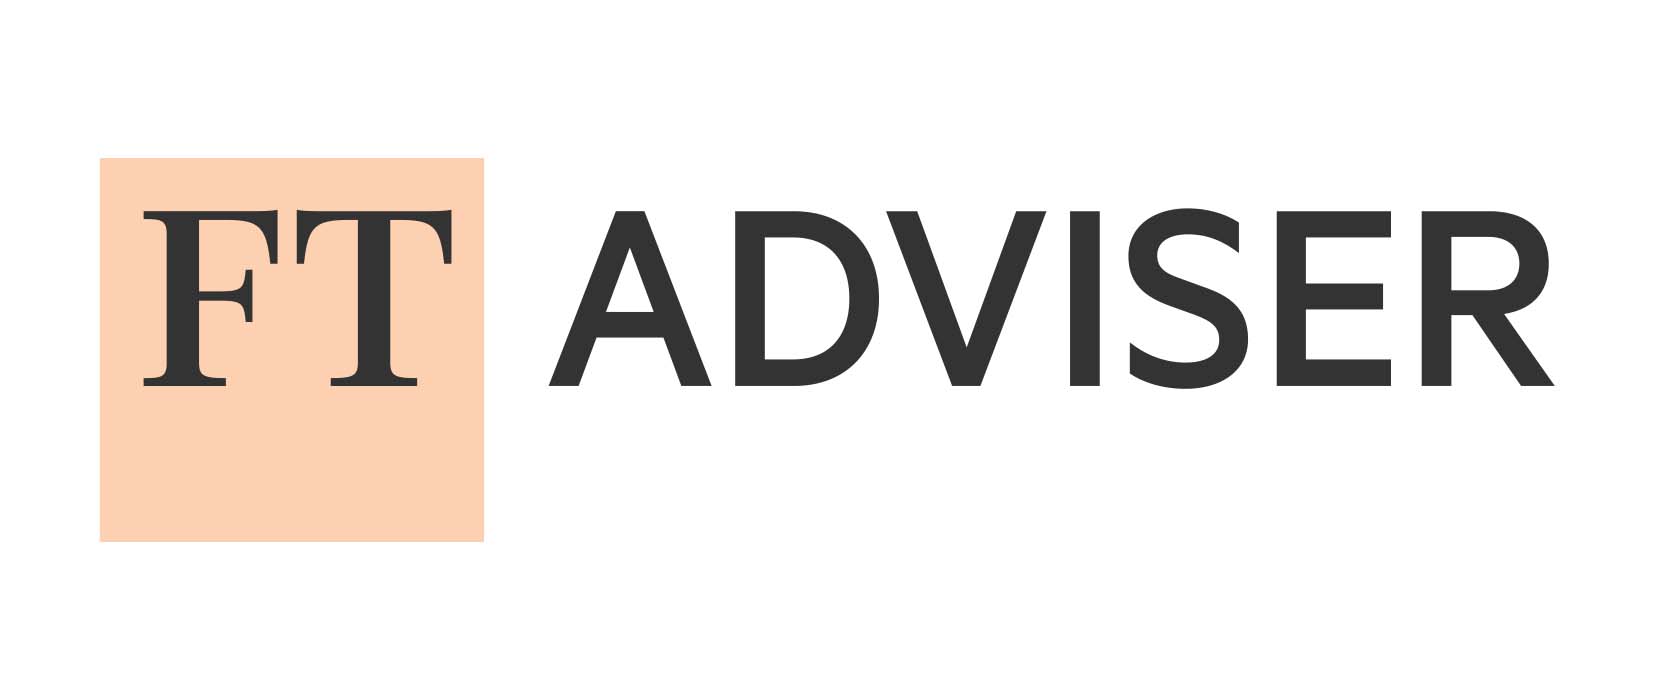 FT adviser logo